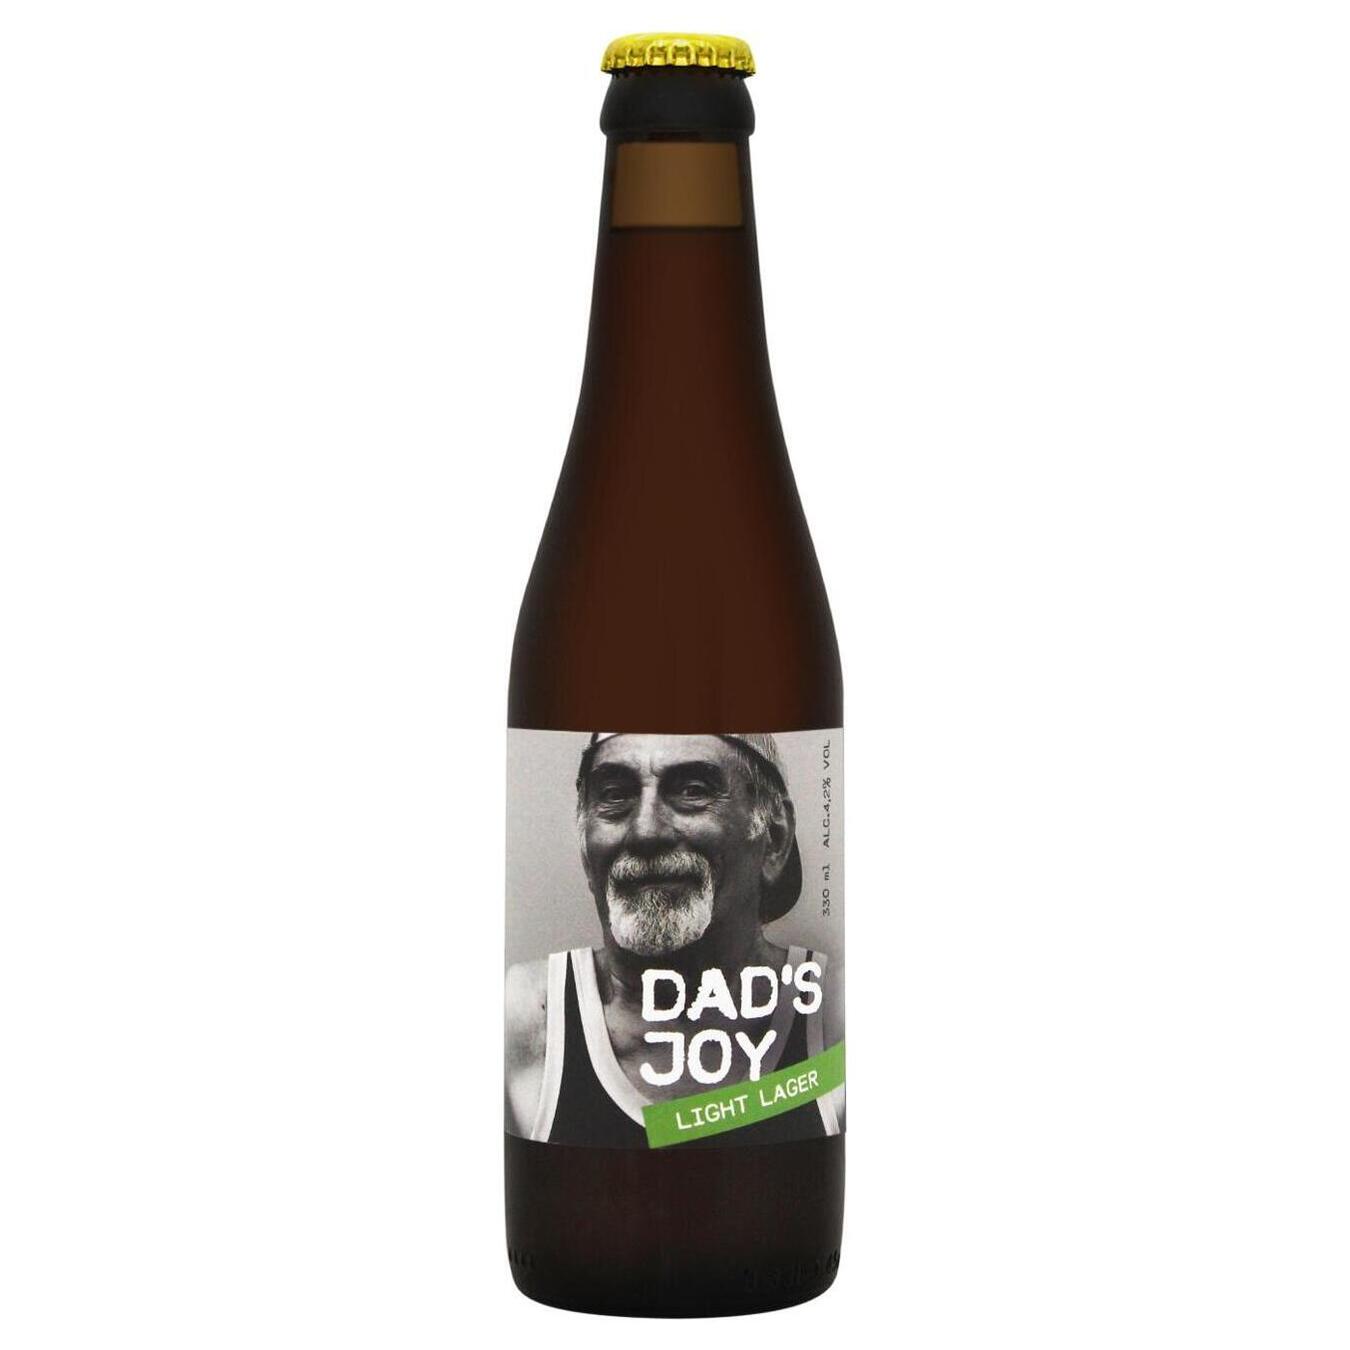 Пиво светлое DAD'S JOY Light lager, 4,2%, 0,33л стекло